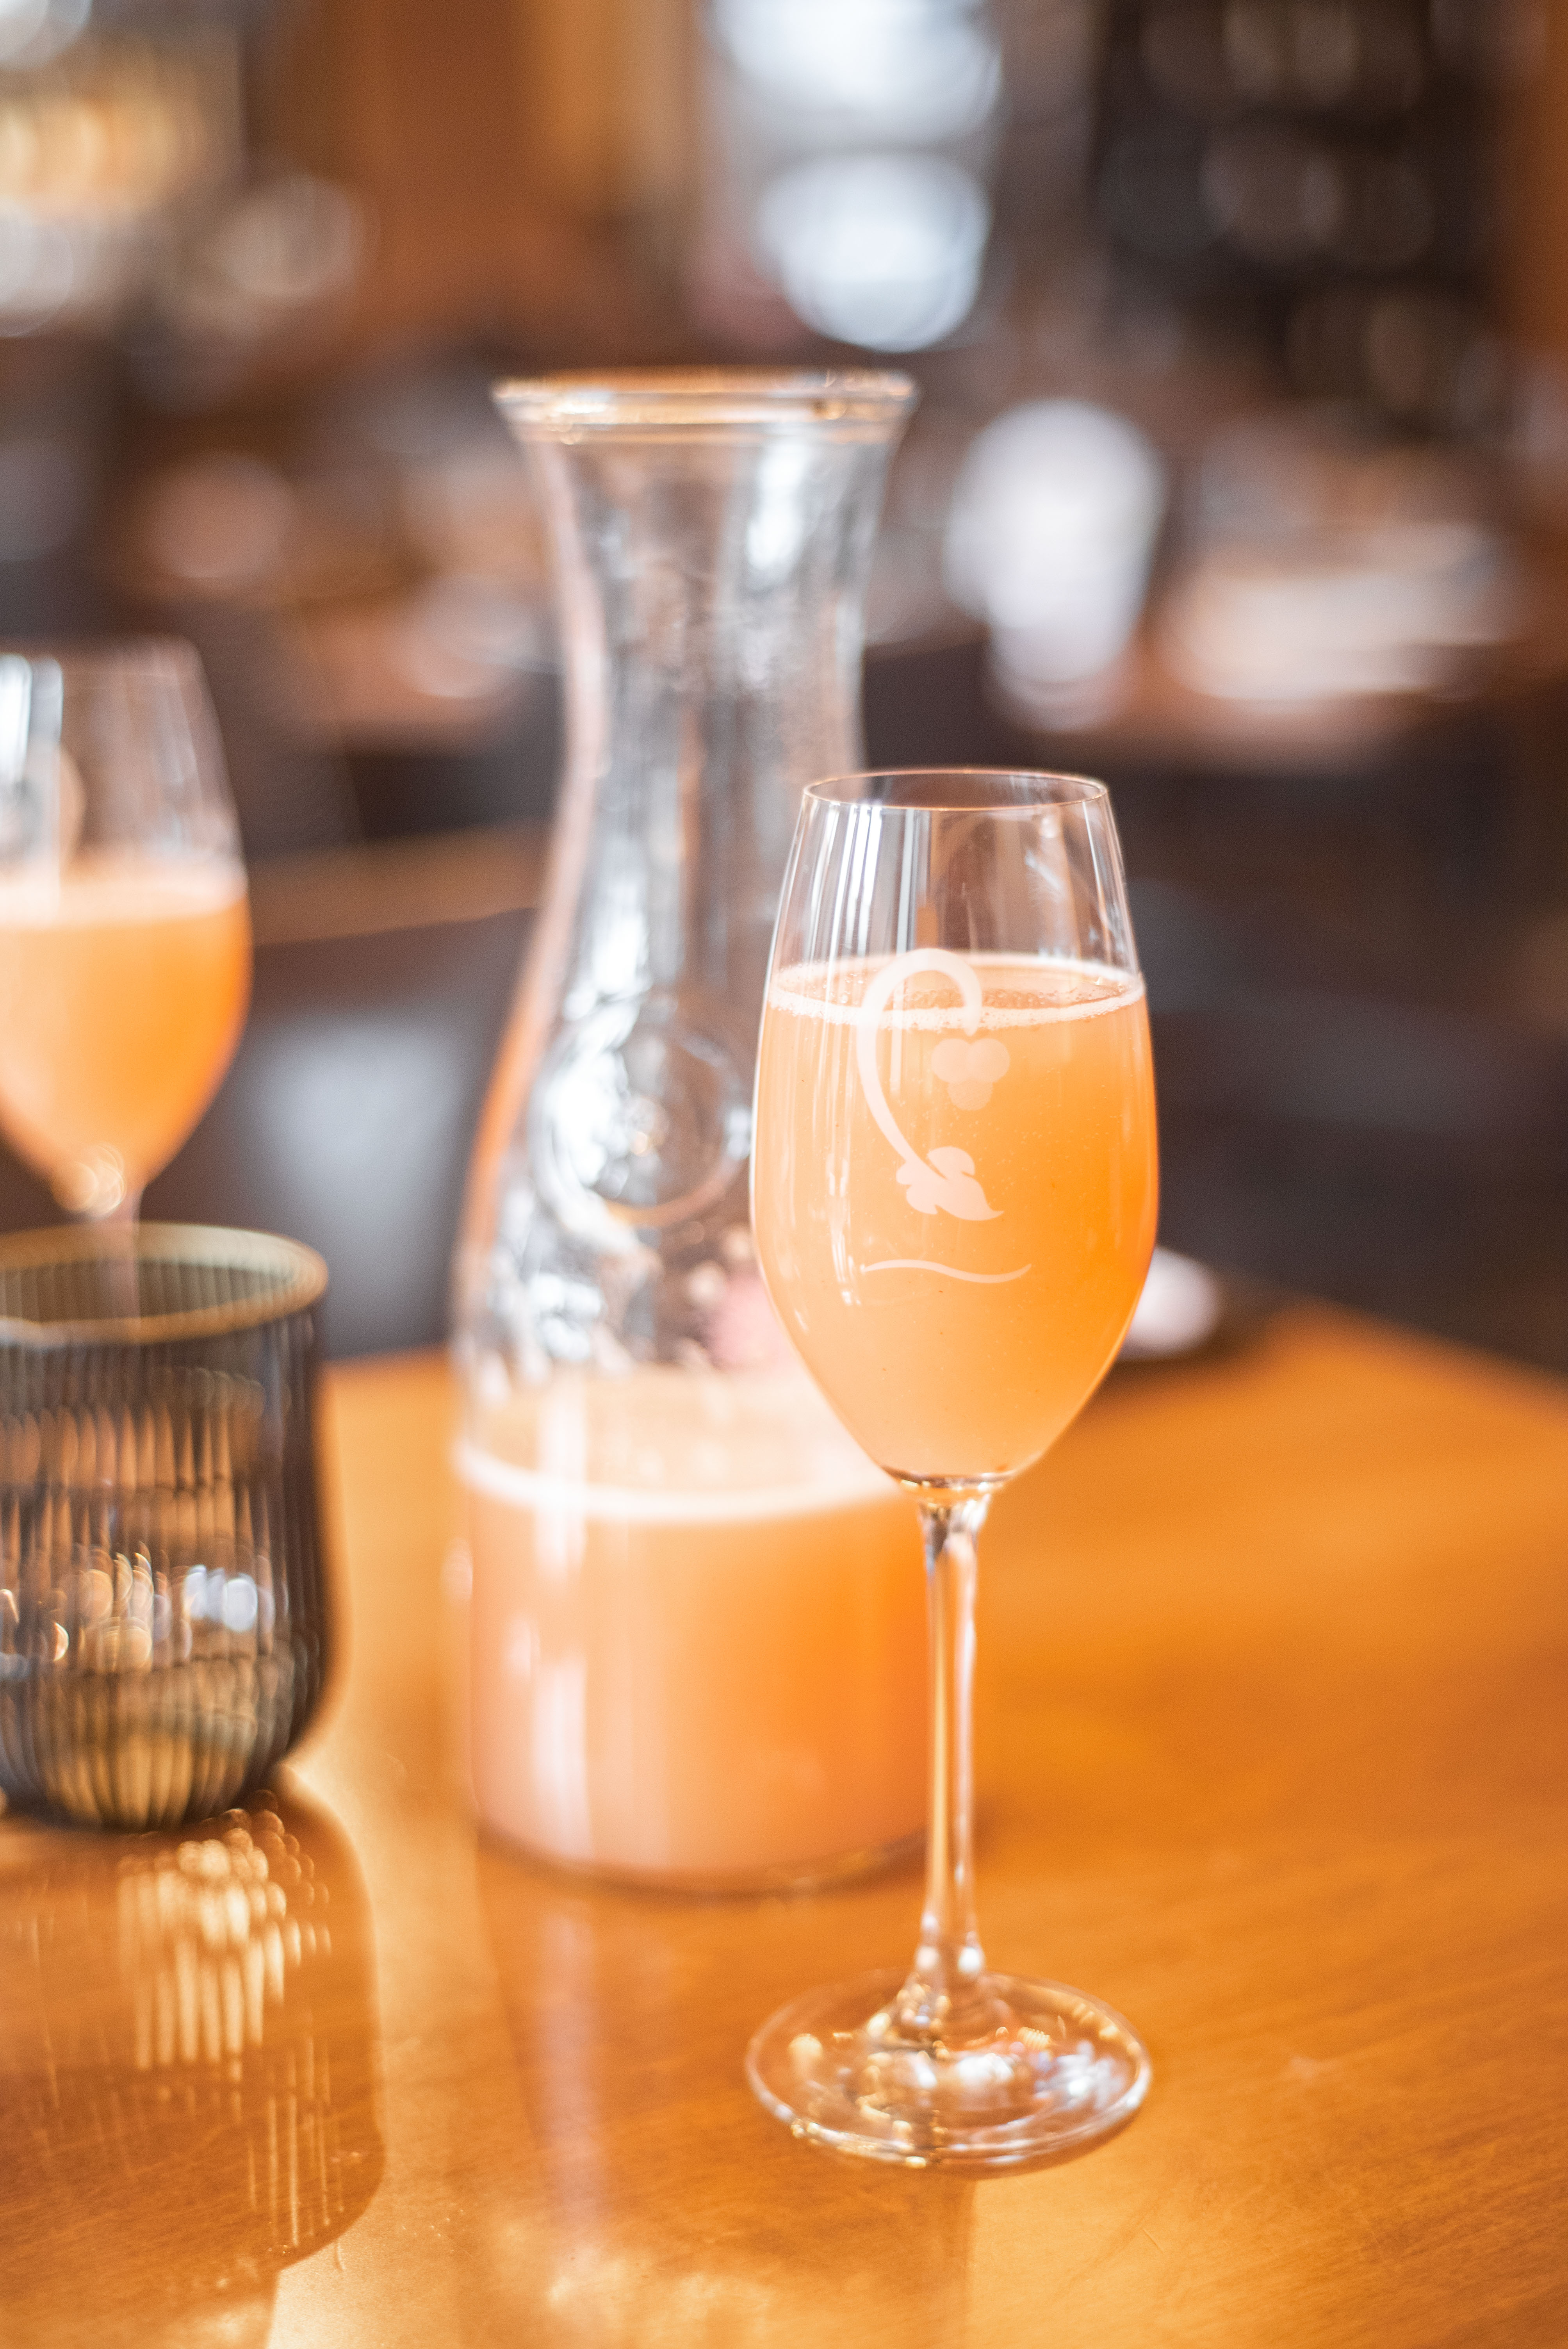 Bellini Cipriani (ruffino prosecco, white peach puree) in a glass